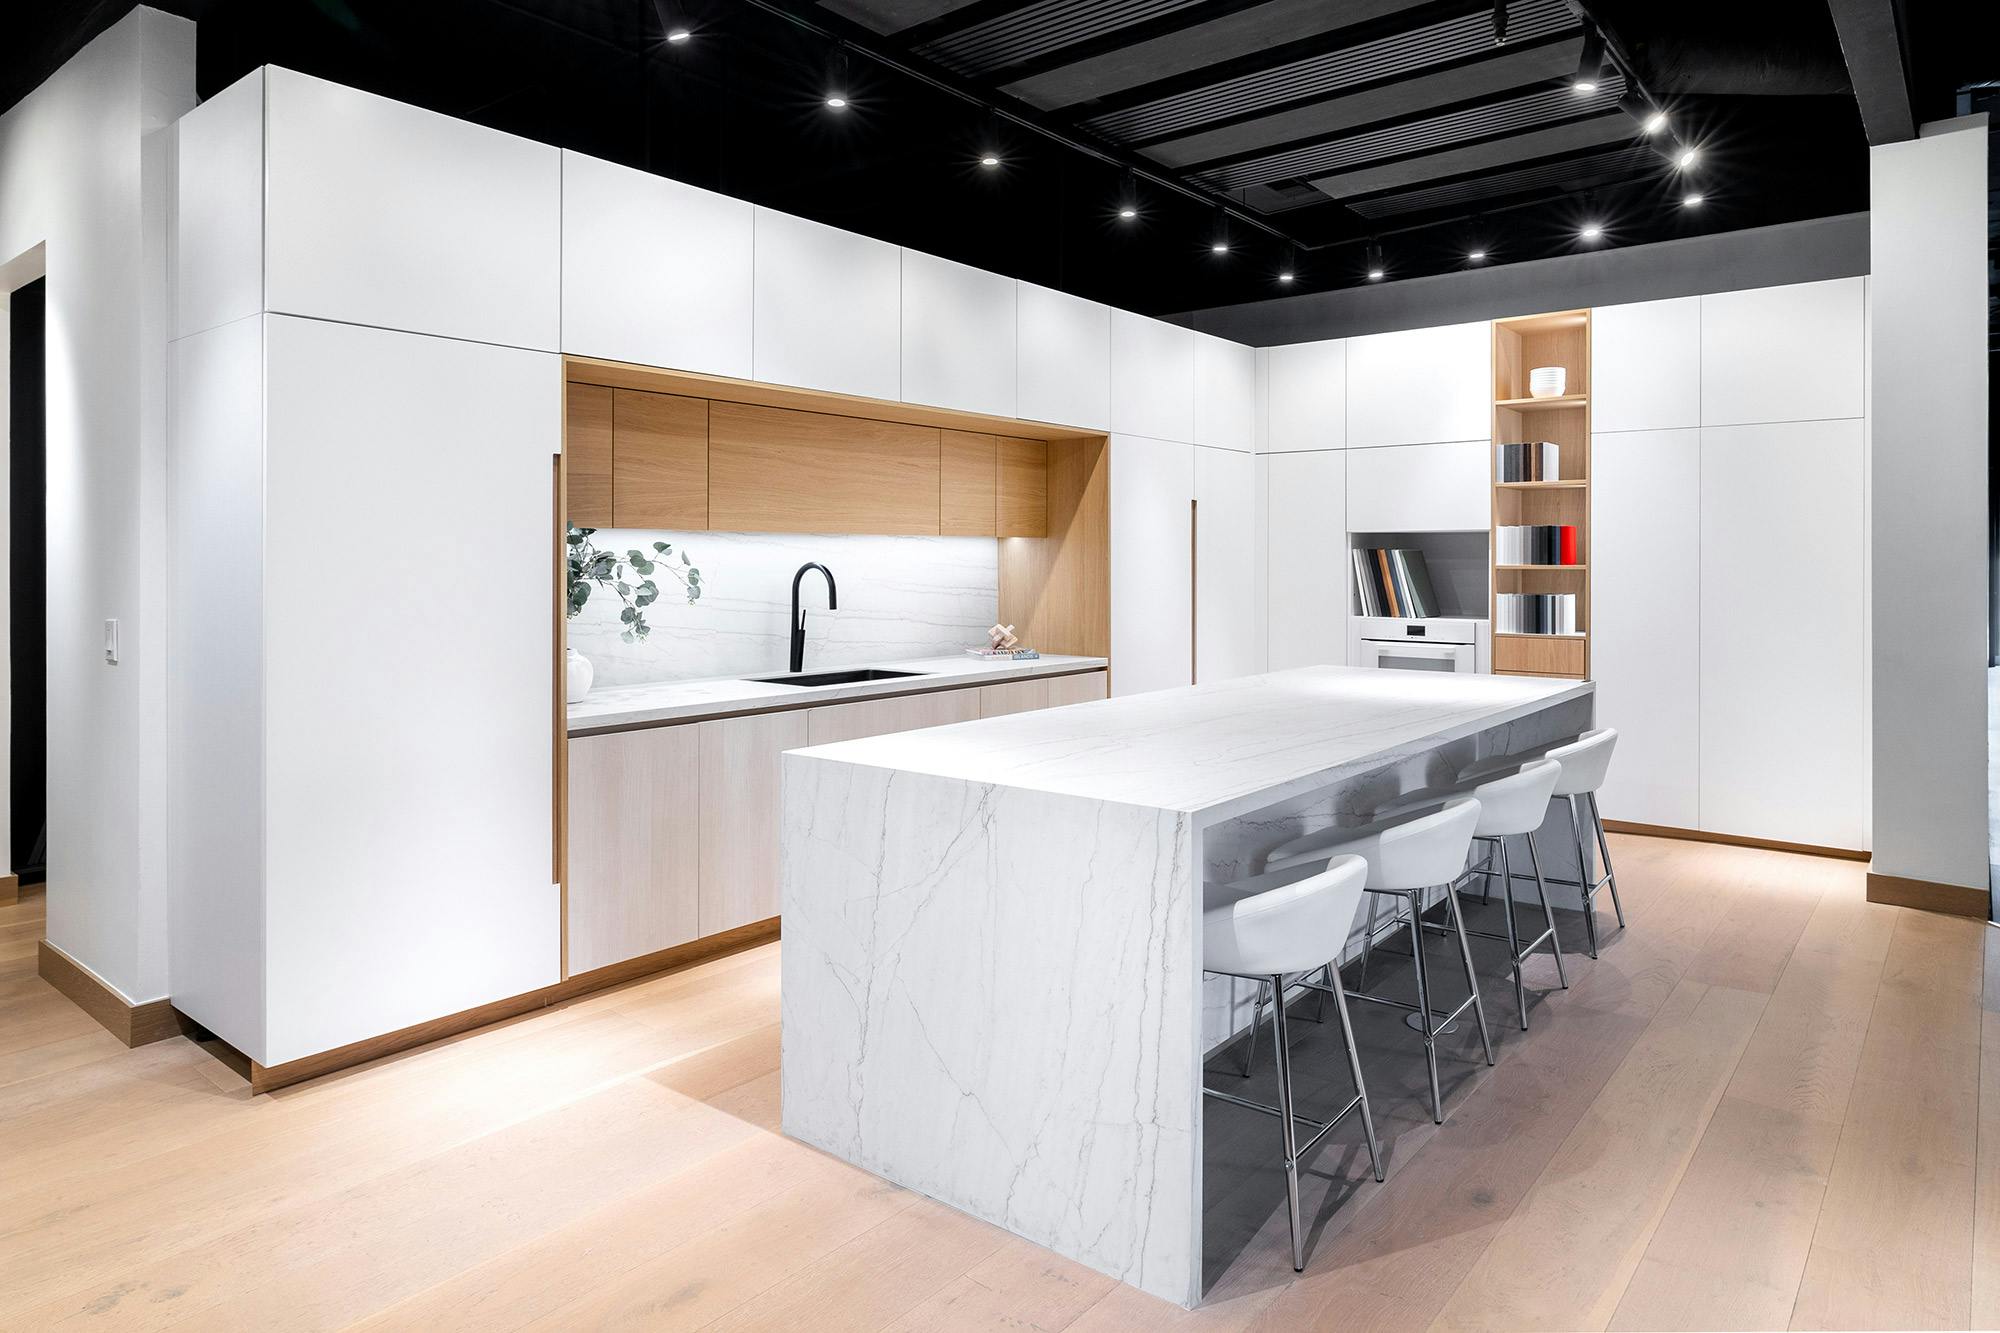 Imagen número 131 de Cosentino, protagonista de la nueva casa funcional, moderna y sostenible en el showroom de AEDAS Homes en Madrid